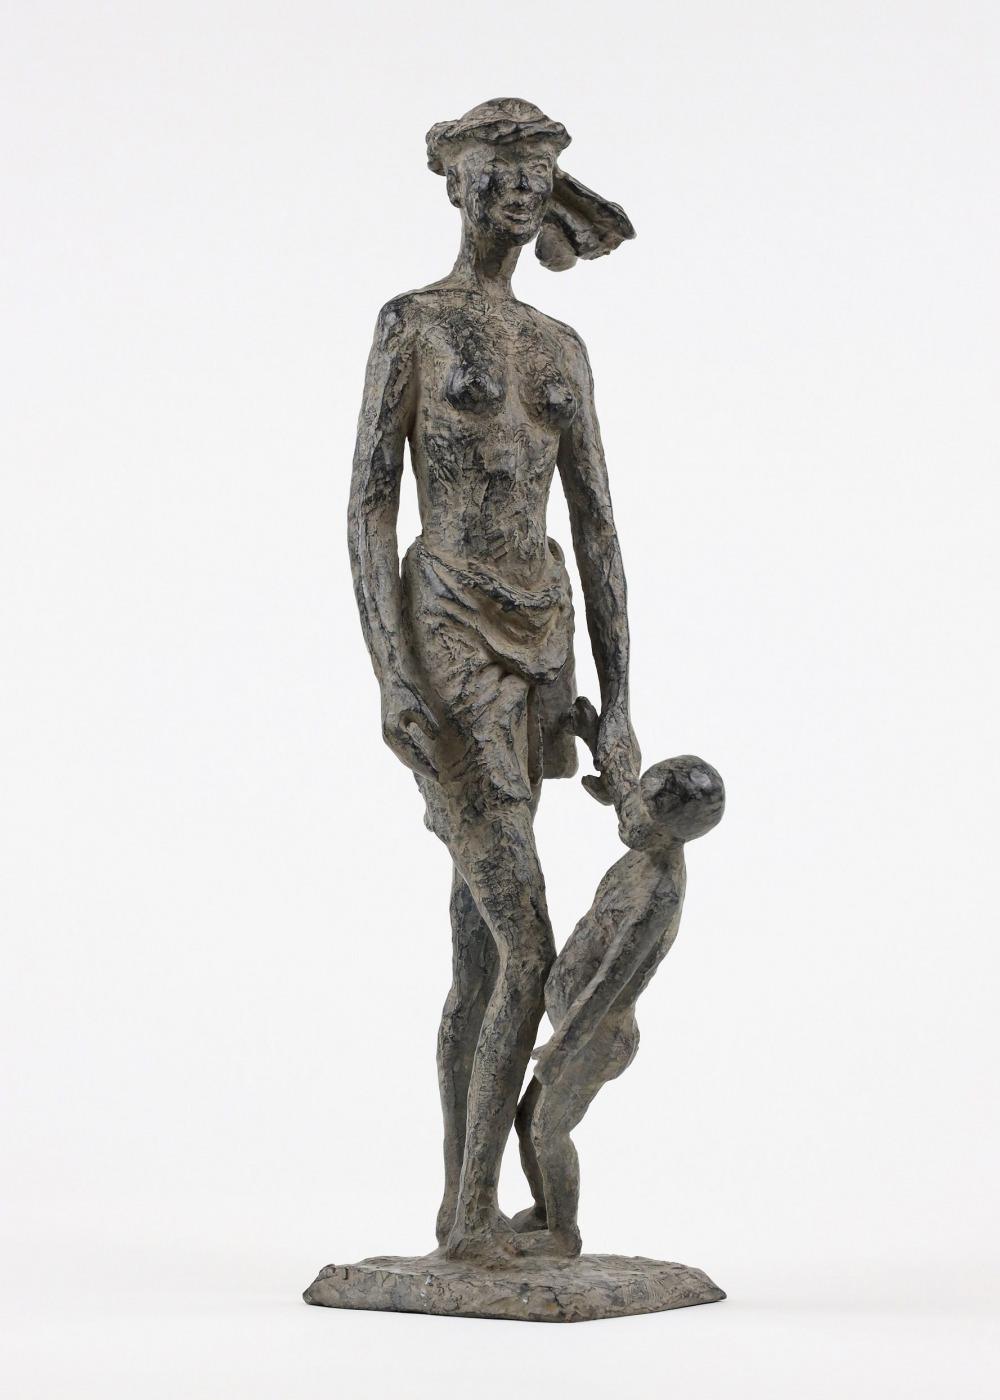 Todo el tiempo del mundo es una escultura de bronce de la artista contemporánea francesa Marine de Soos, de dimensiones 40 × 17 × 12 cm. 
La escultura está firmada y numerada, forma parte de una edición limitada de 8 ediciones + 4 pruebas de